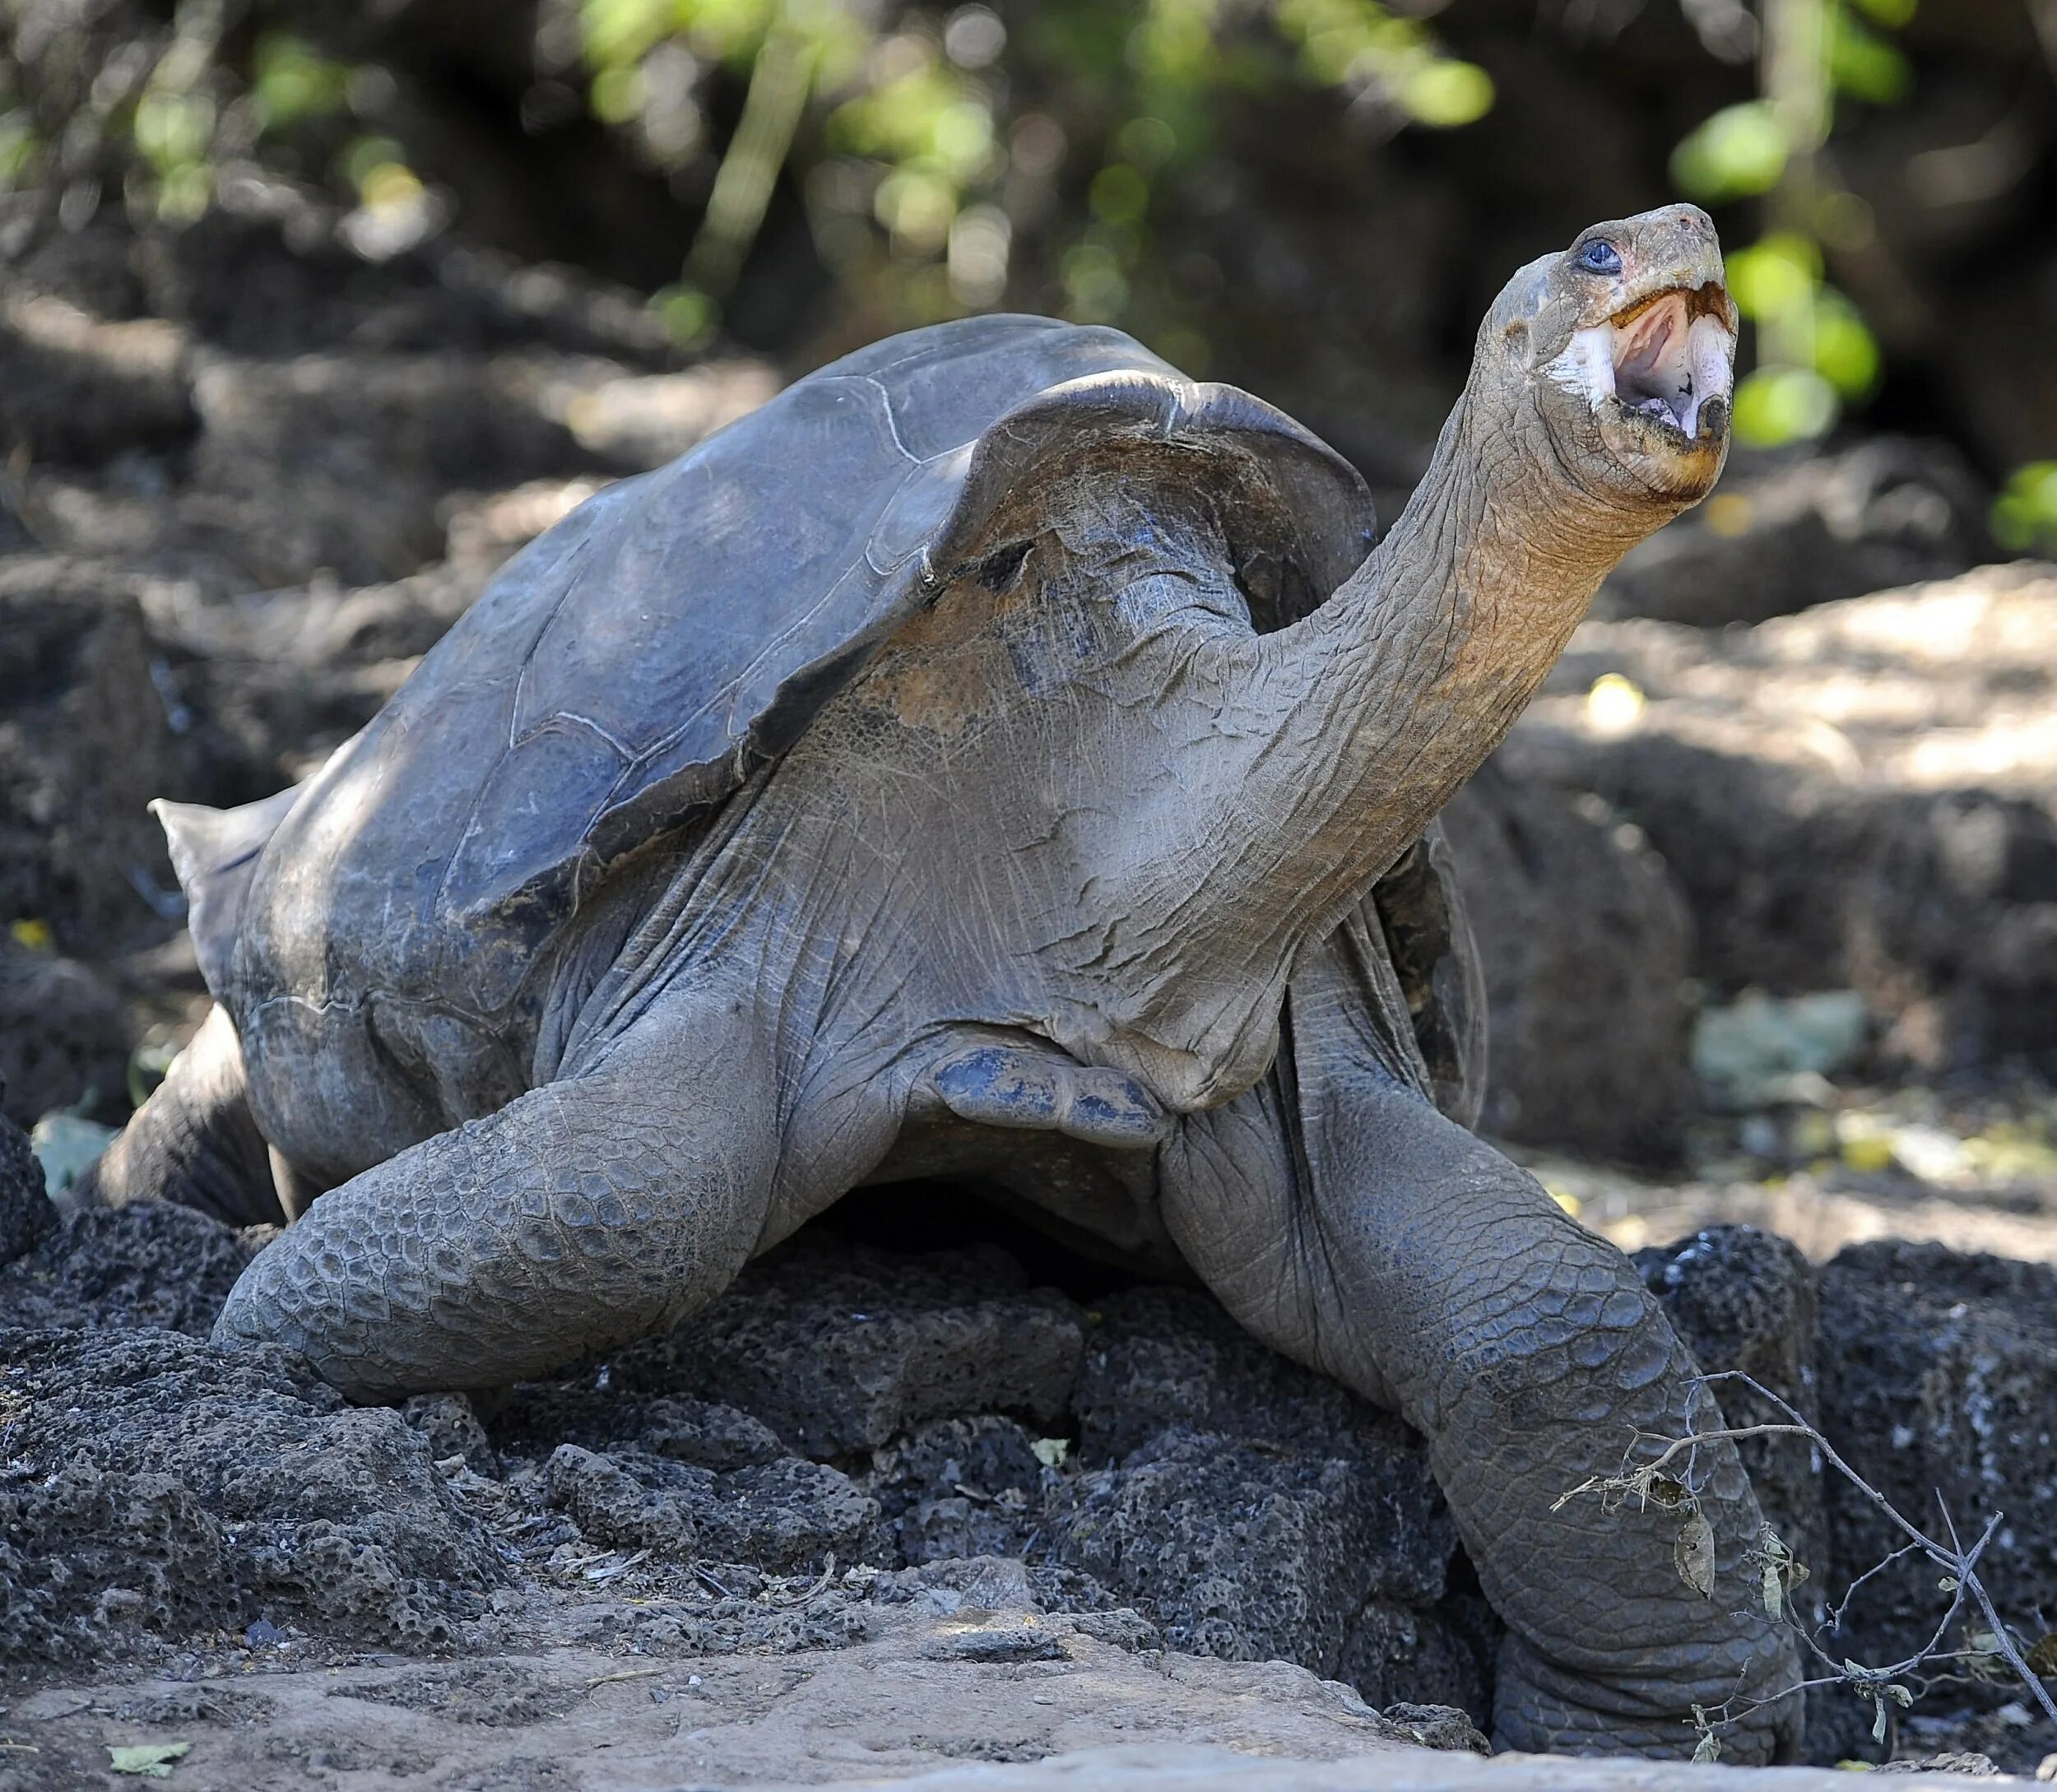 Галапагосская слоновая черепаха. Галапагосская черепаха одинокий Джордж. Галапагосские острова черепахи. Гигантская слоновая черепаха Пинта. Абингдонская слоновая